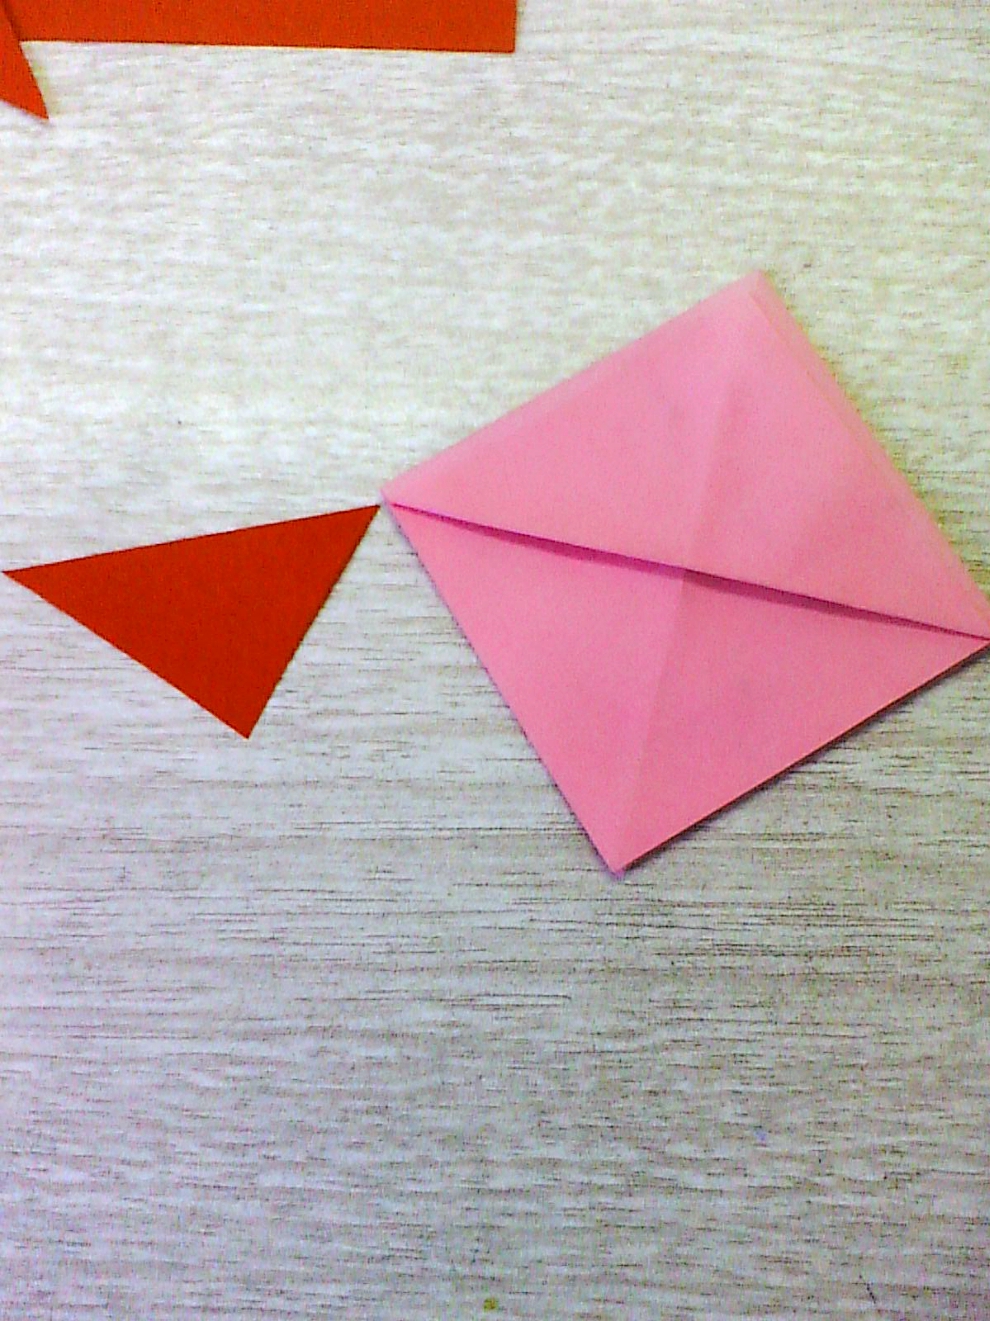 用纸剪出等腰三角形图片